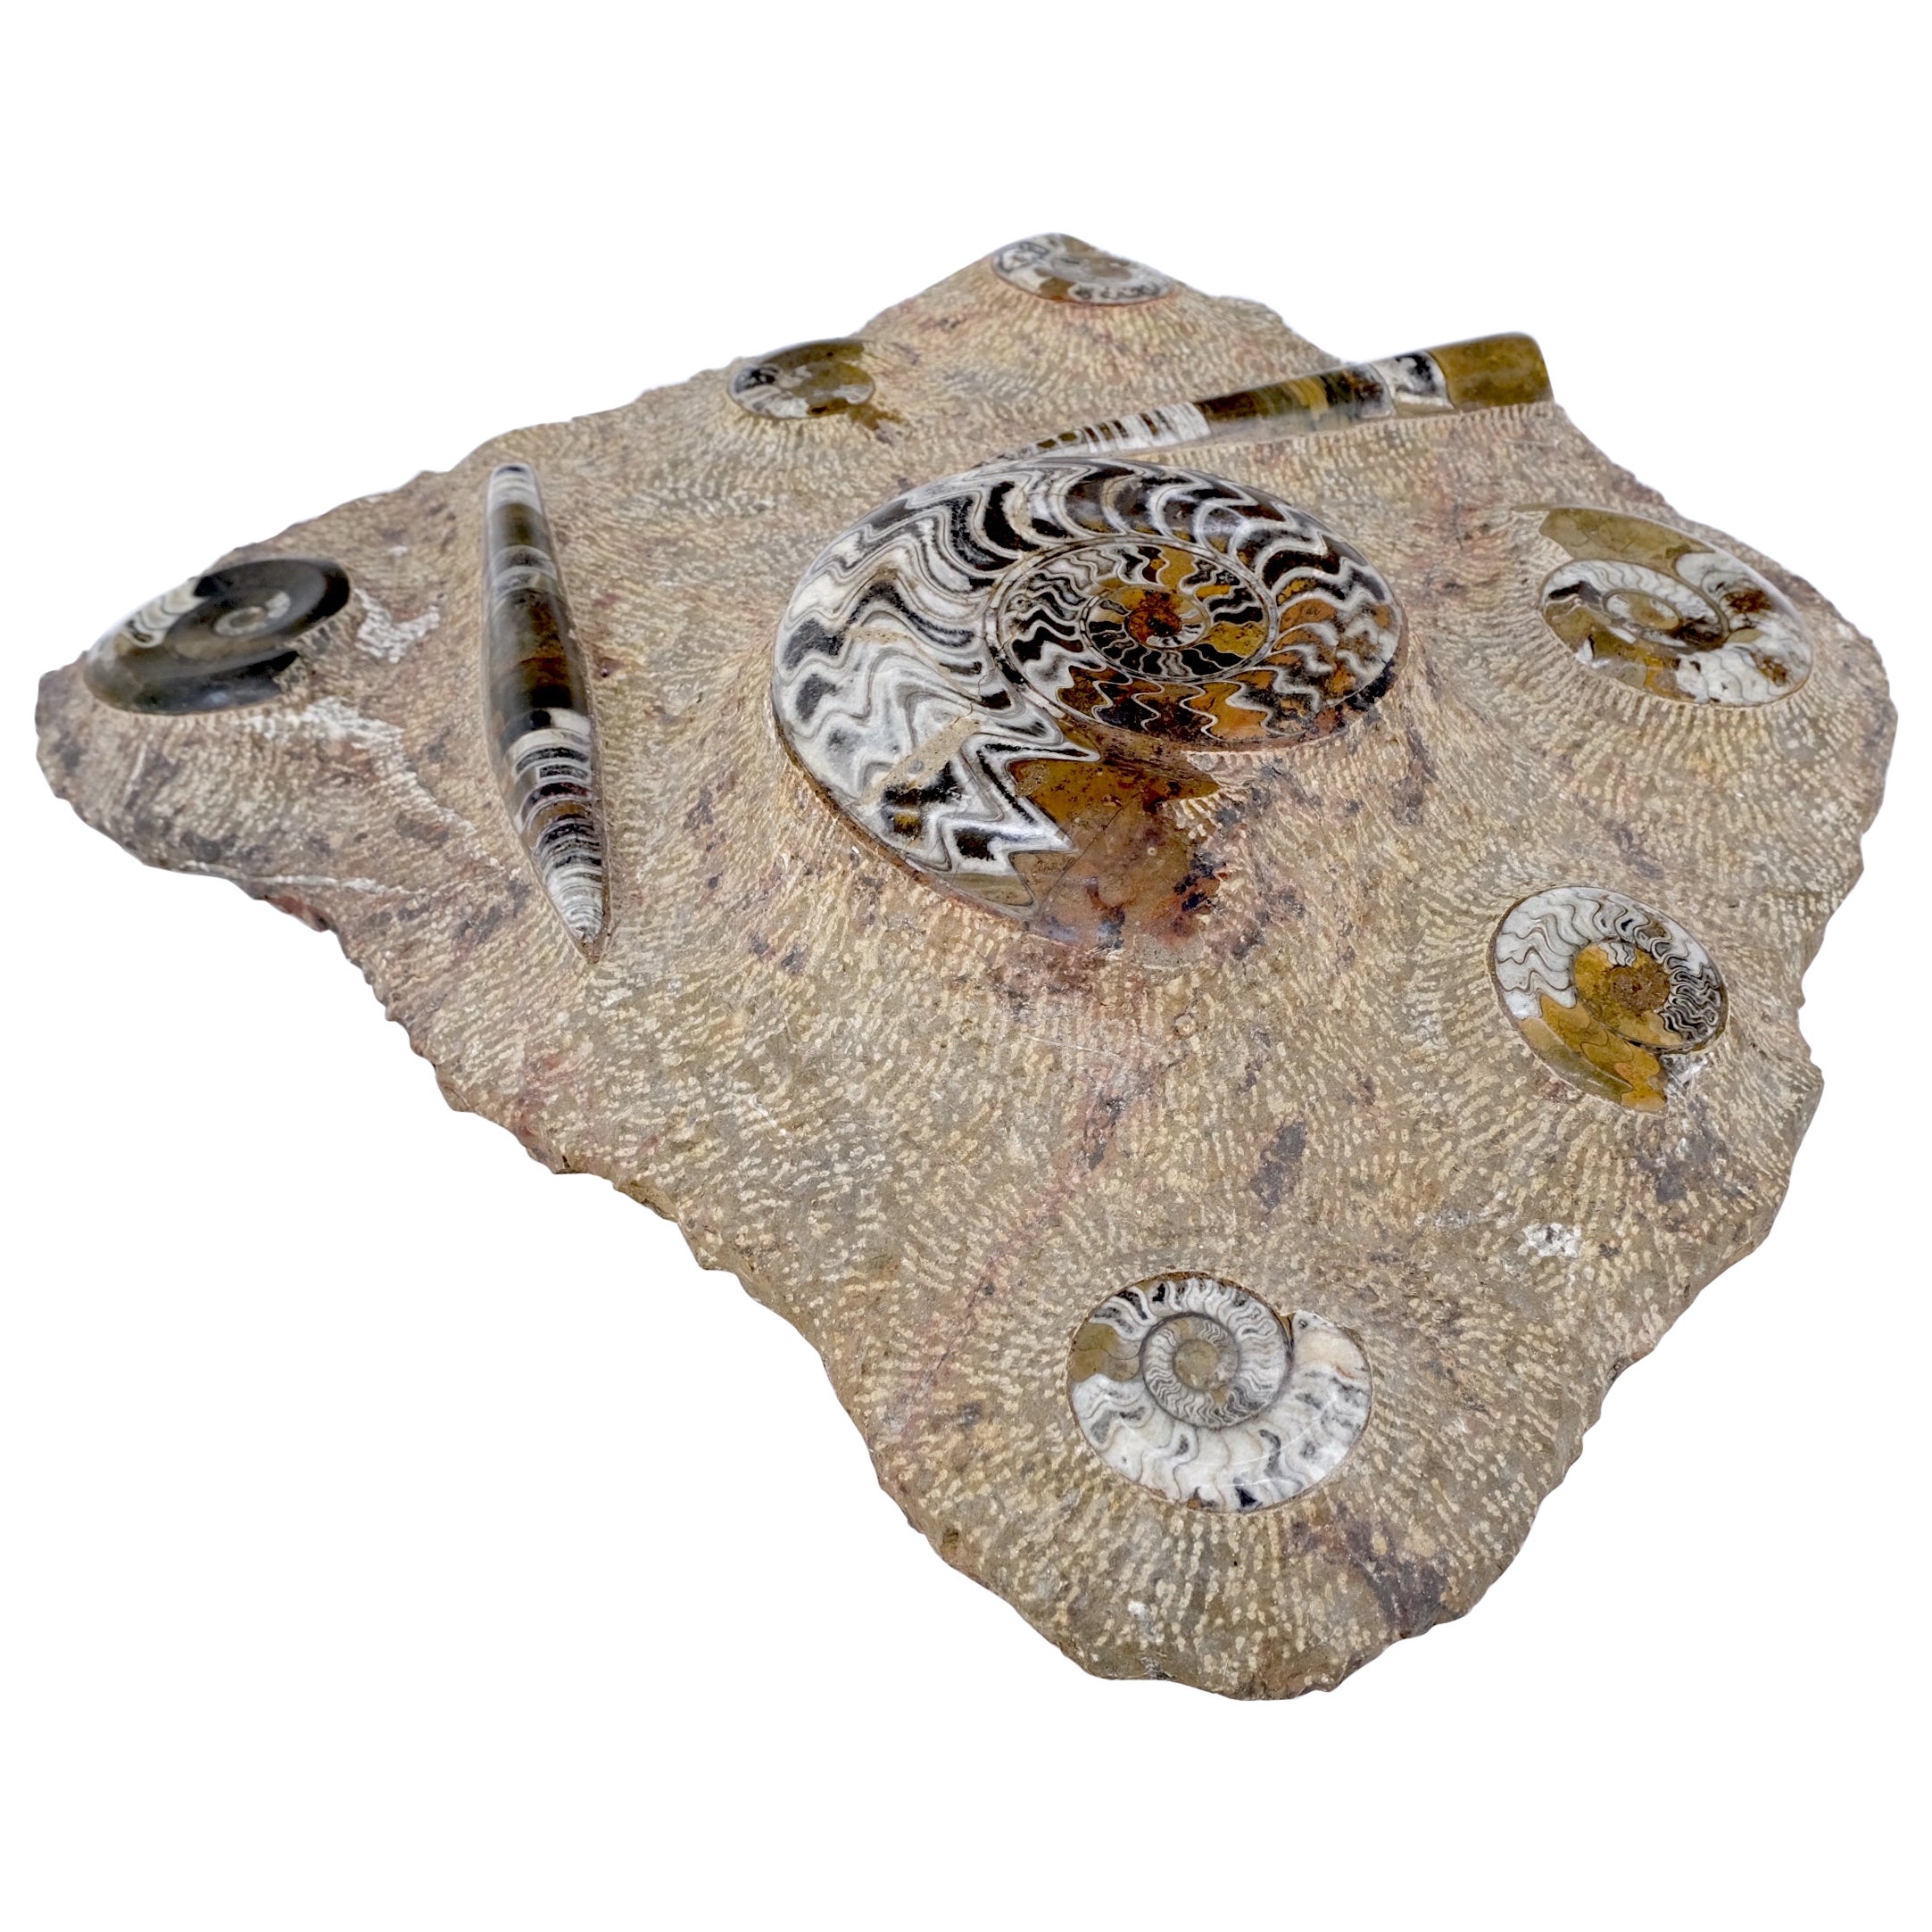 Große authentische Ammonit-Plakette-Skulptur, Fossil Cluster